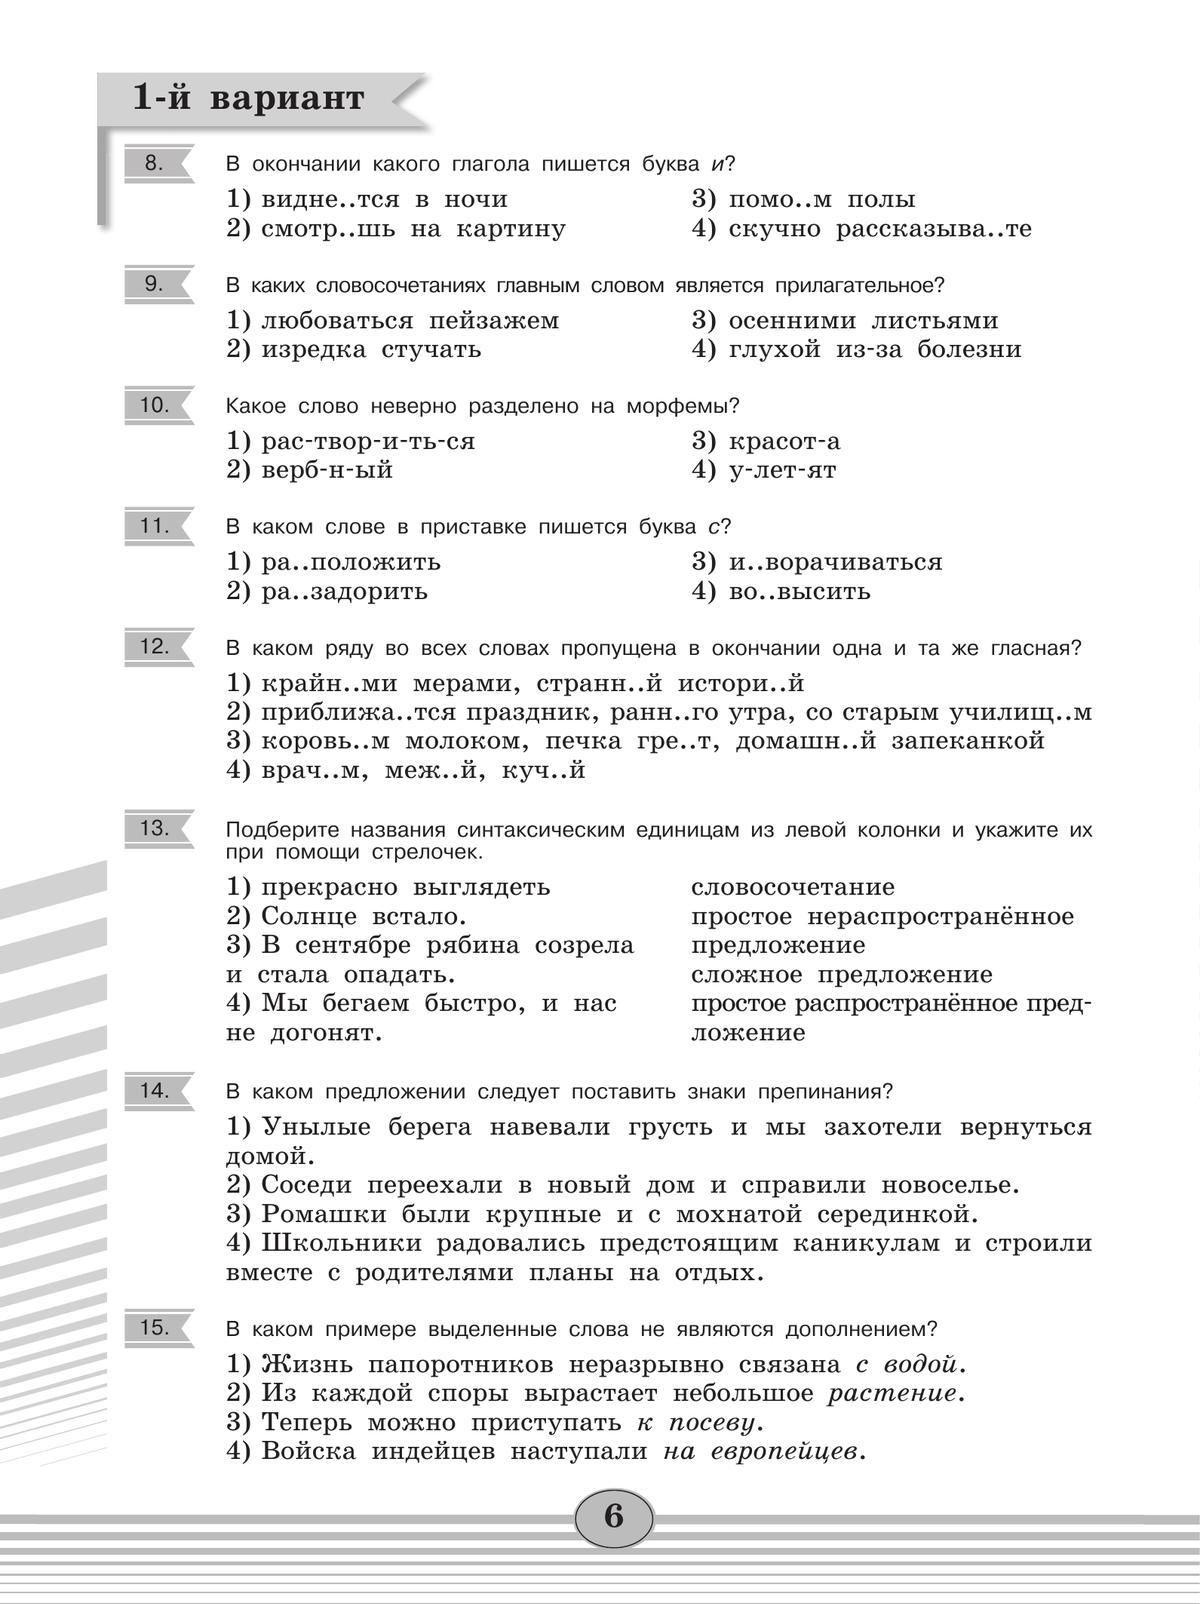 Русский язык. Диагностические работы. 6 класс 2